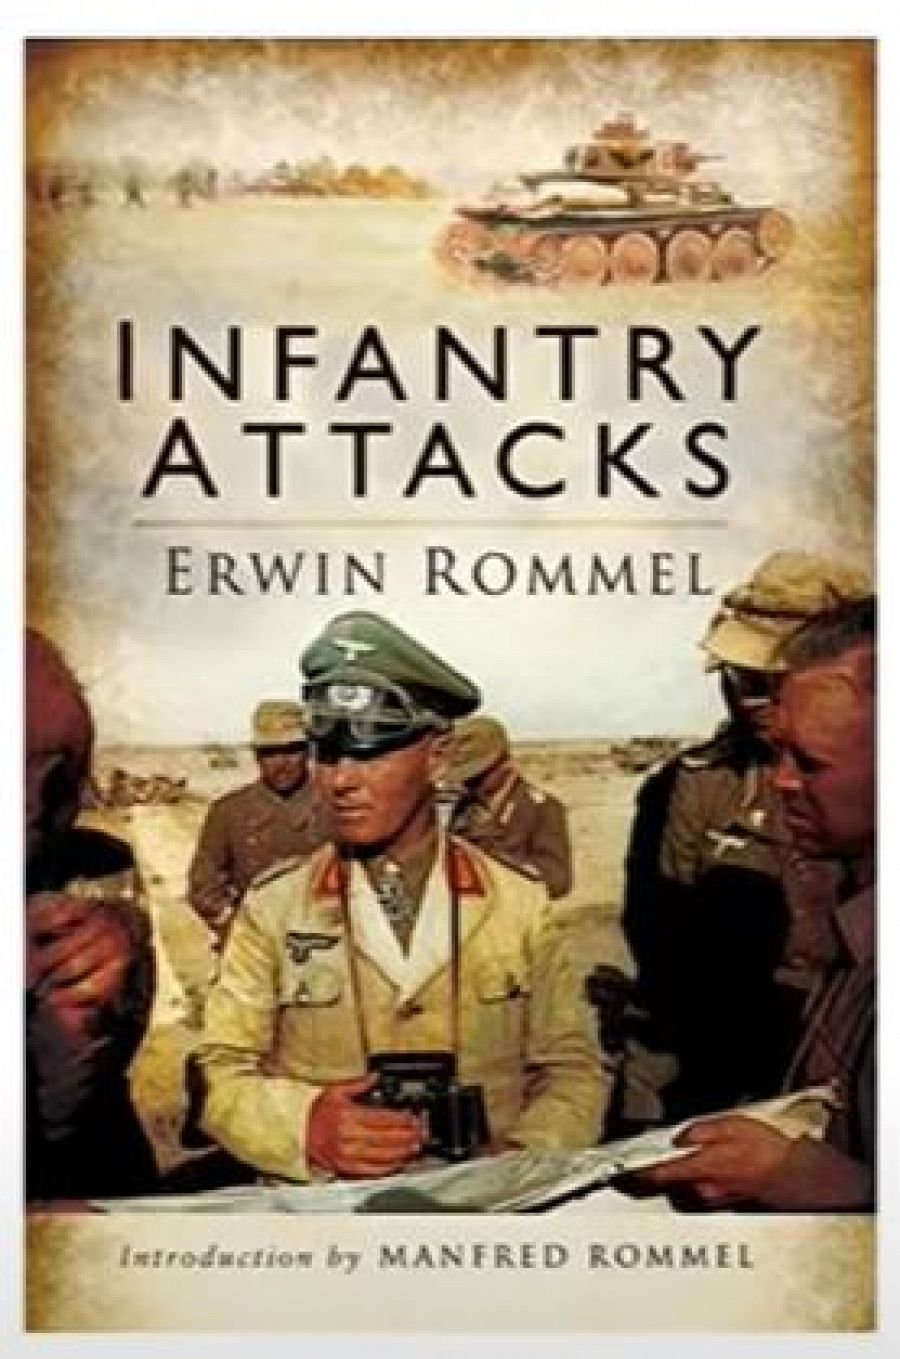 El libro sobre tácticas militares que dio fama a Rommel y que se hizo indispensable en las academias militares